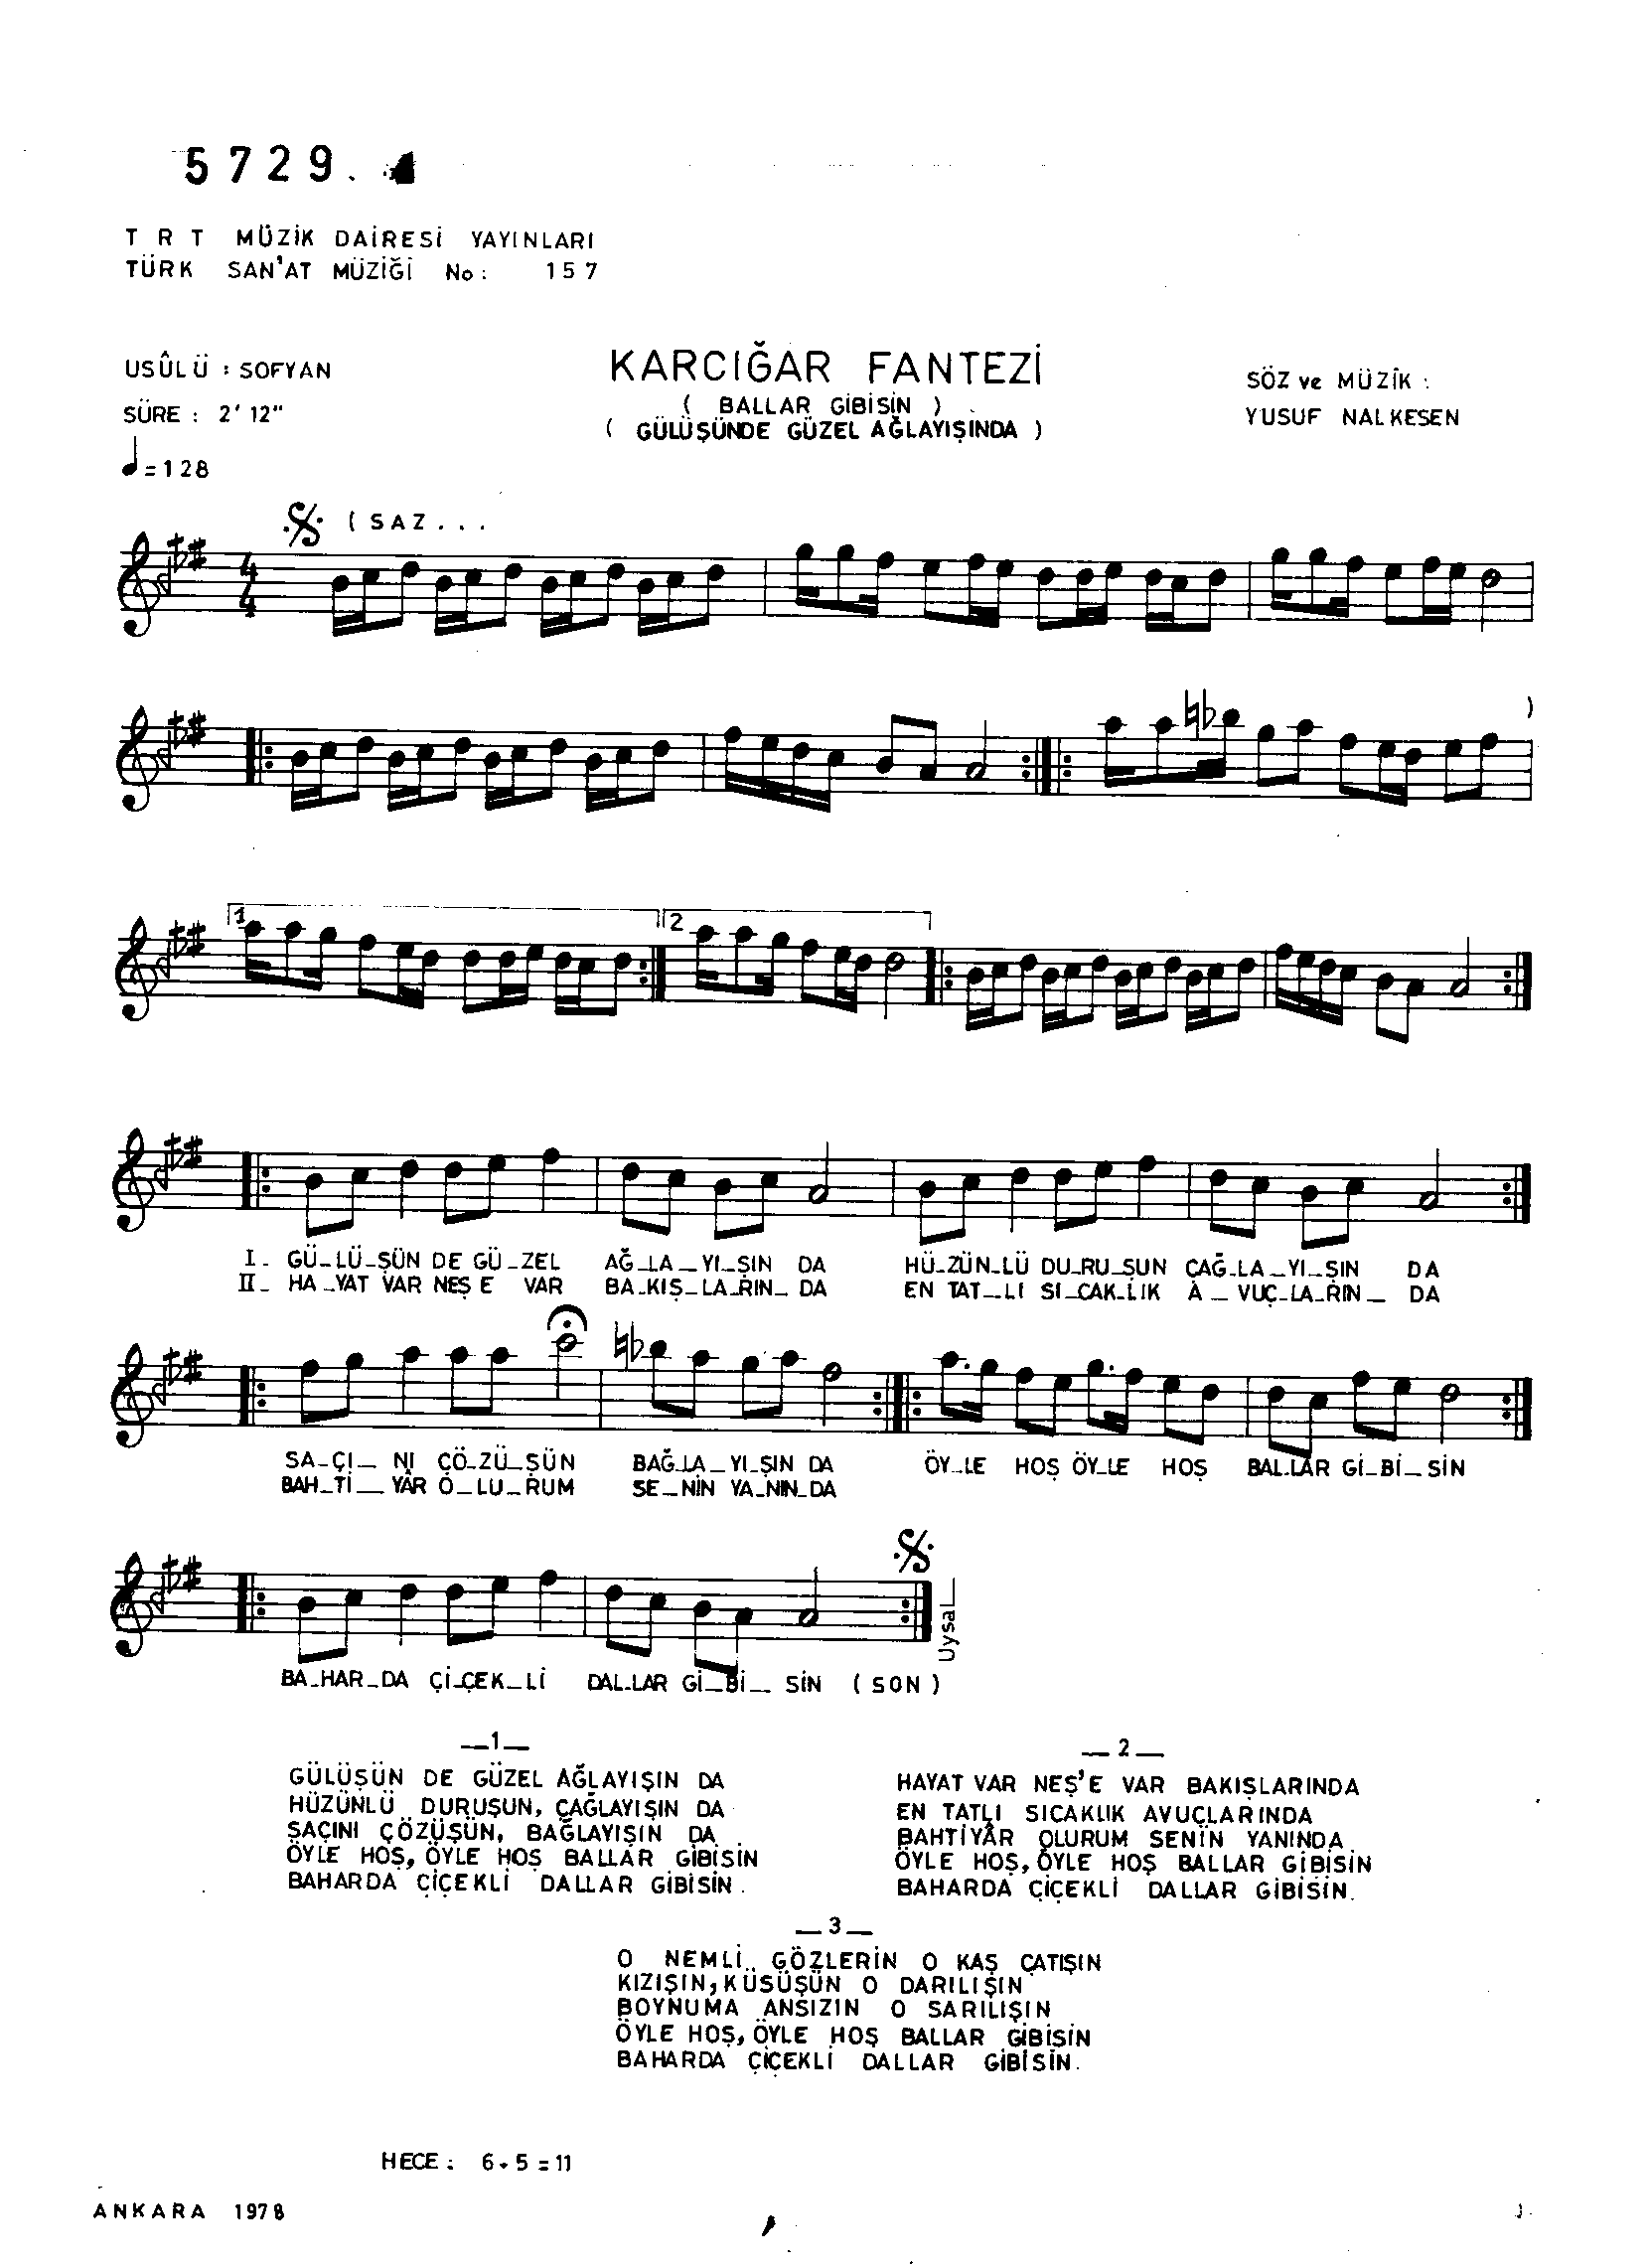 Karcığar - Şarkı - Yusuf Nalkesen - Sayfa 1